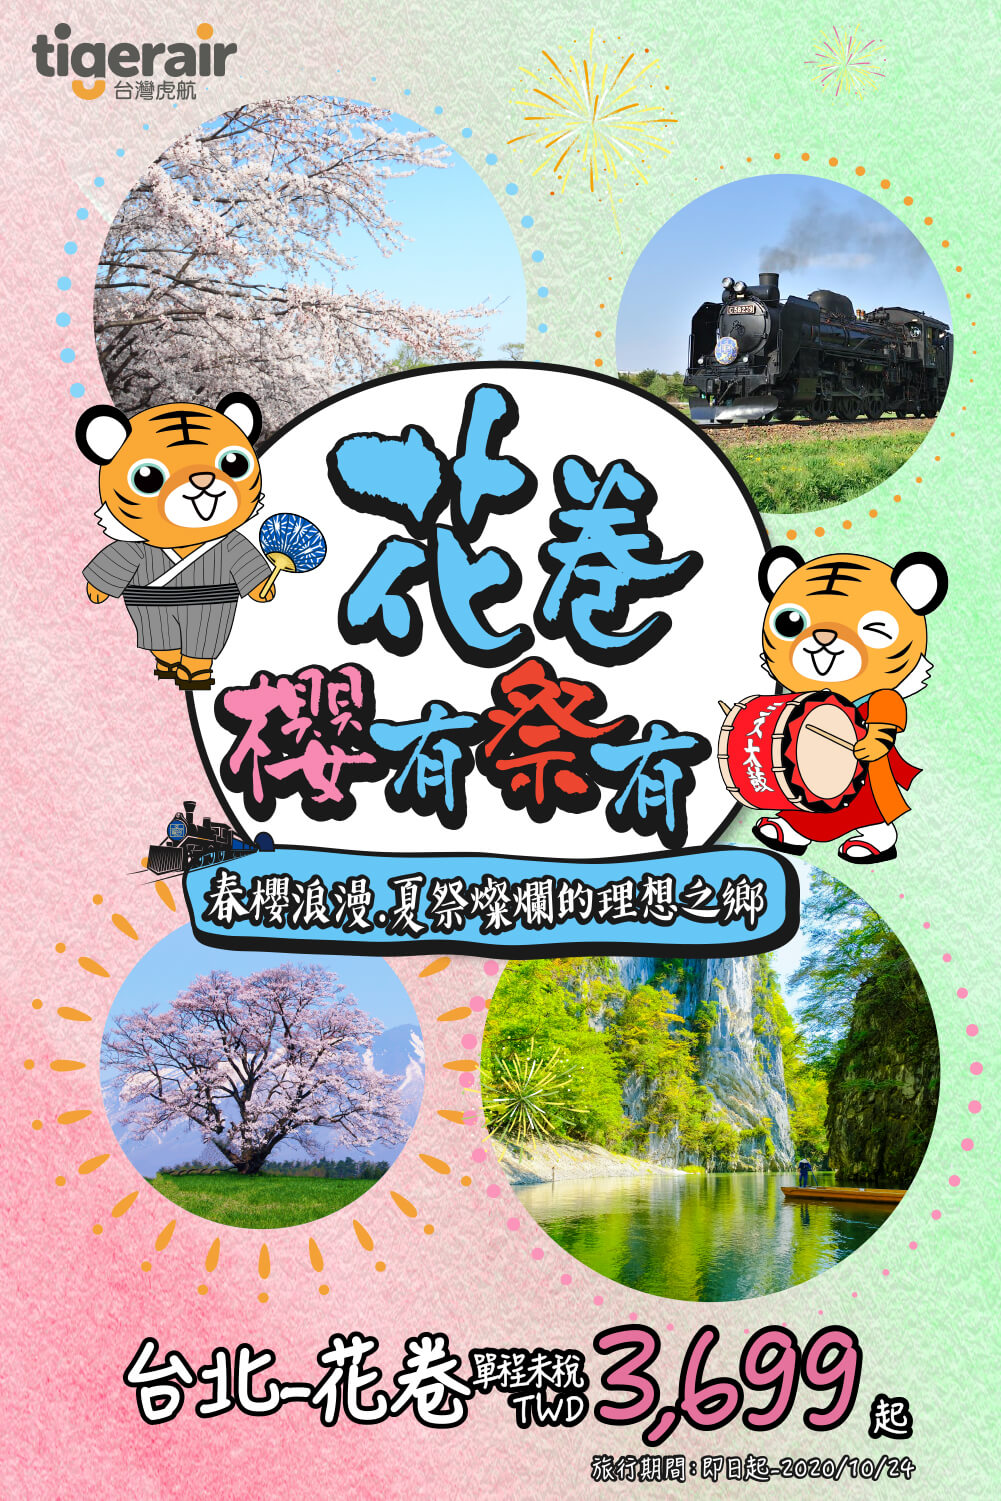 Promotion on Hanamaki tourism